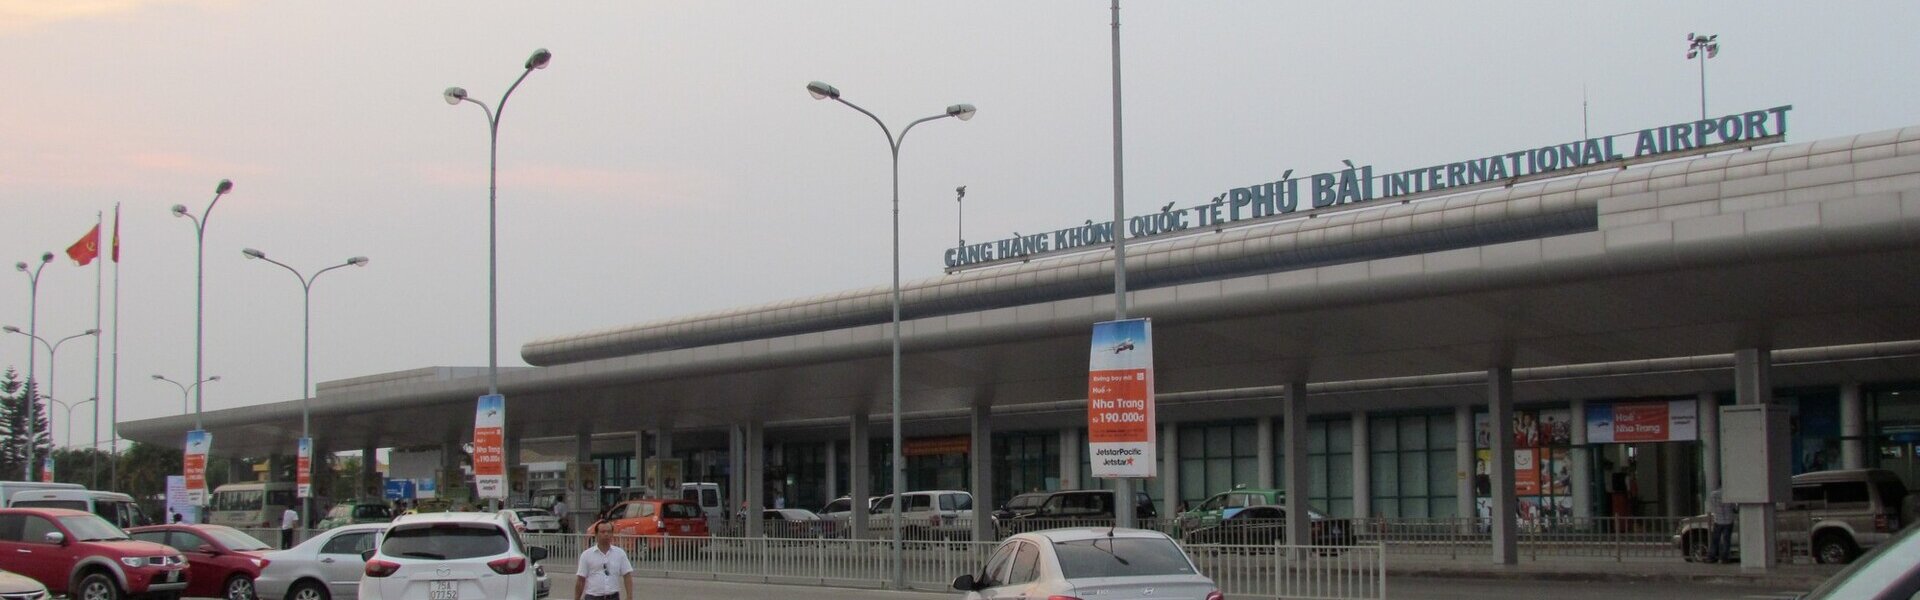 Sân bay Phú Bài và những điều bạn cần biết